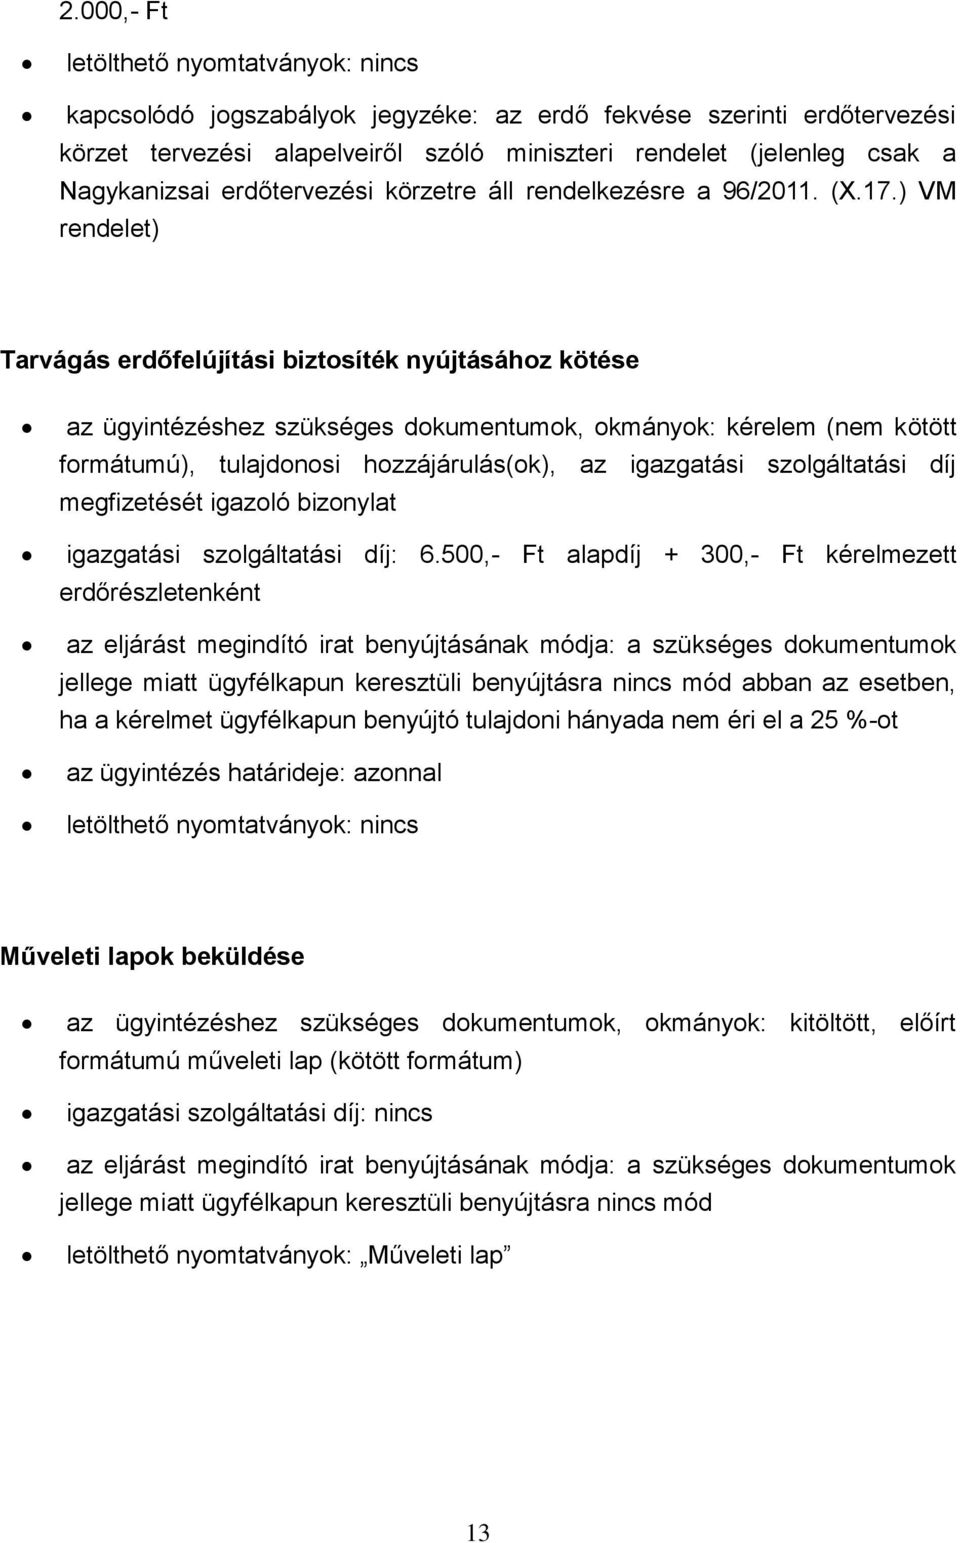 Tartalomjegyzék. Veszprém Megyei Kormányhivatal Erdészeti Igazgatósága PDF  Free Download